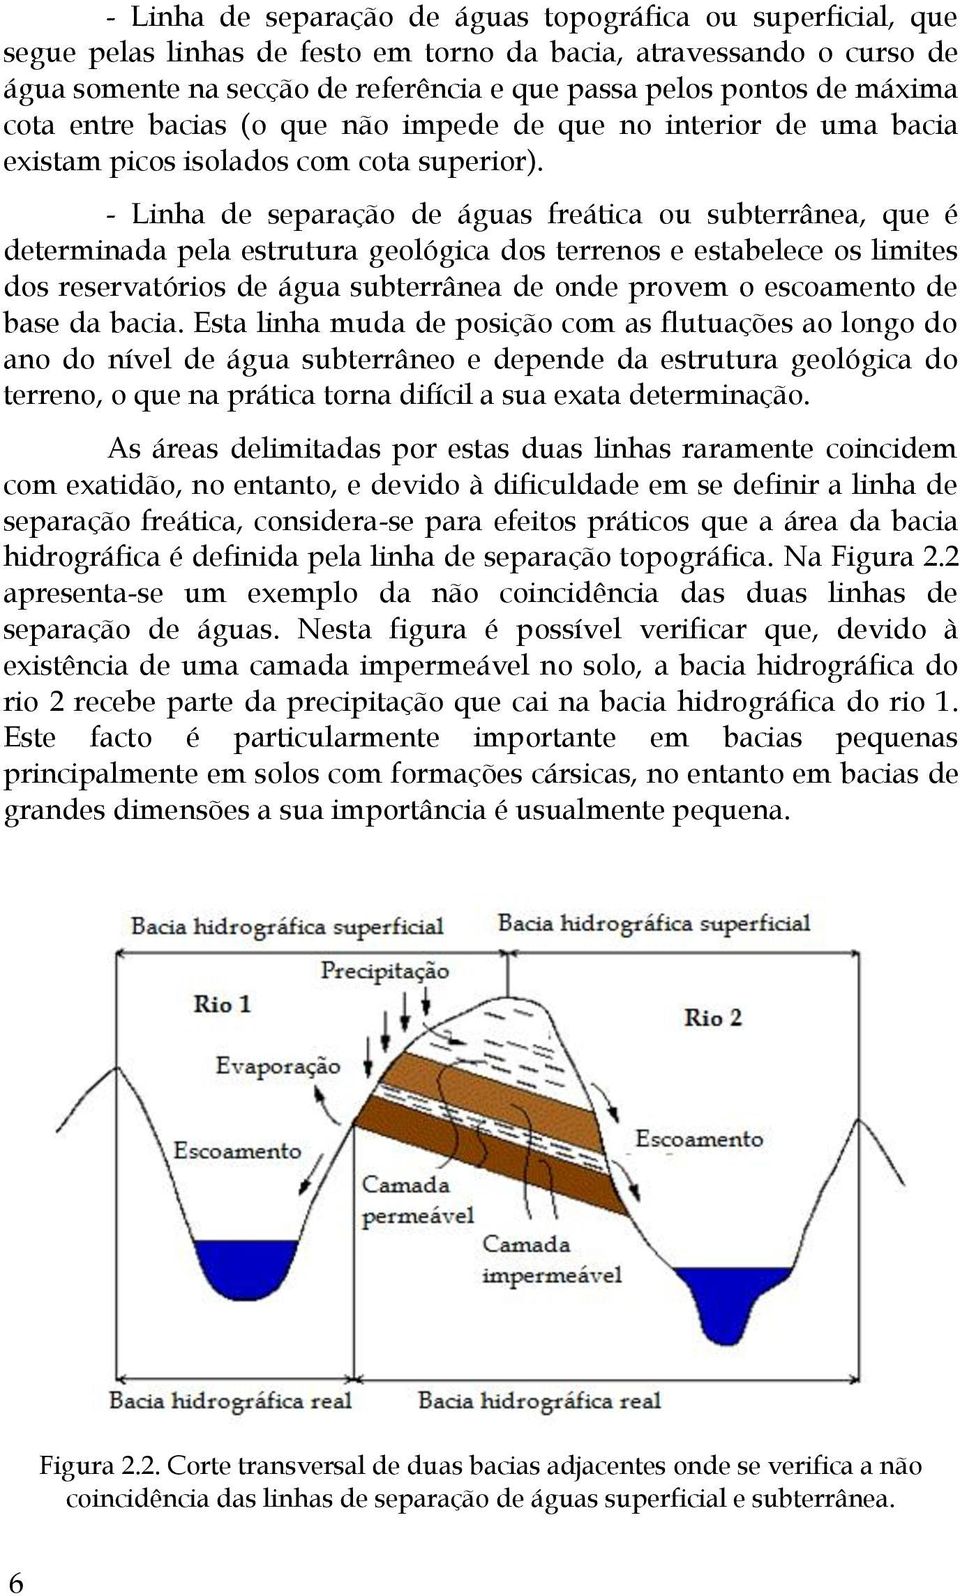 - Linha de separação de águas freática ou subterrânea, que é determinada pela estrutura geológica dos terrenos e estabelece os limites dos reservatórios de água subterrânea de onde provem o